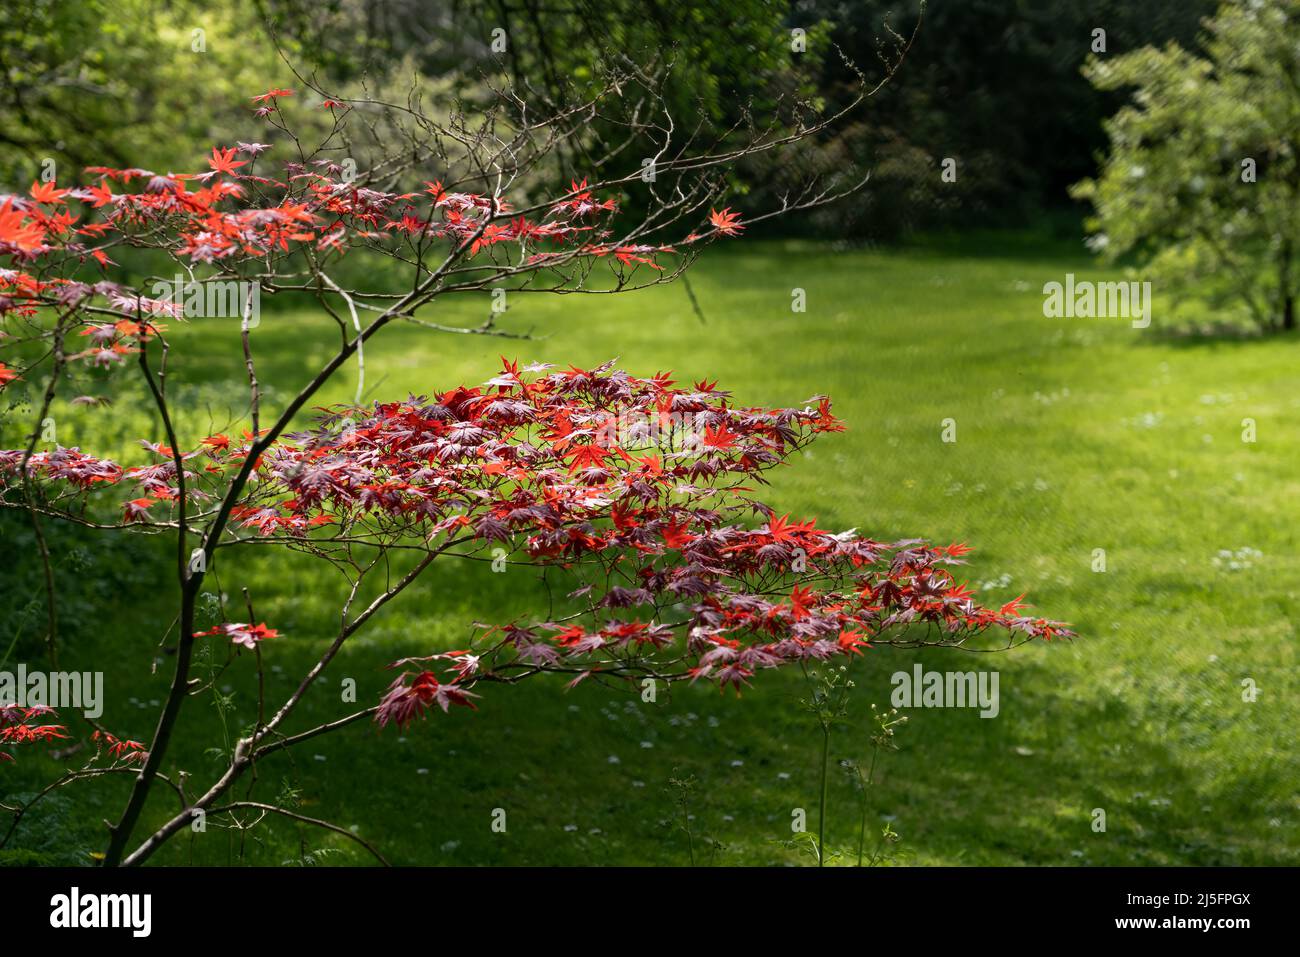 Nahaufnahme eines filigranen weinenden purpurnen Acer oder japanischen Ahornbaums (Dissectum Granat) Stockfoto